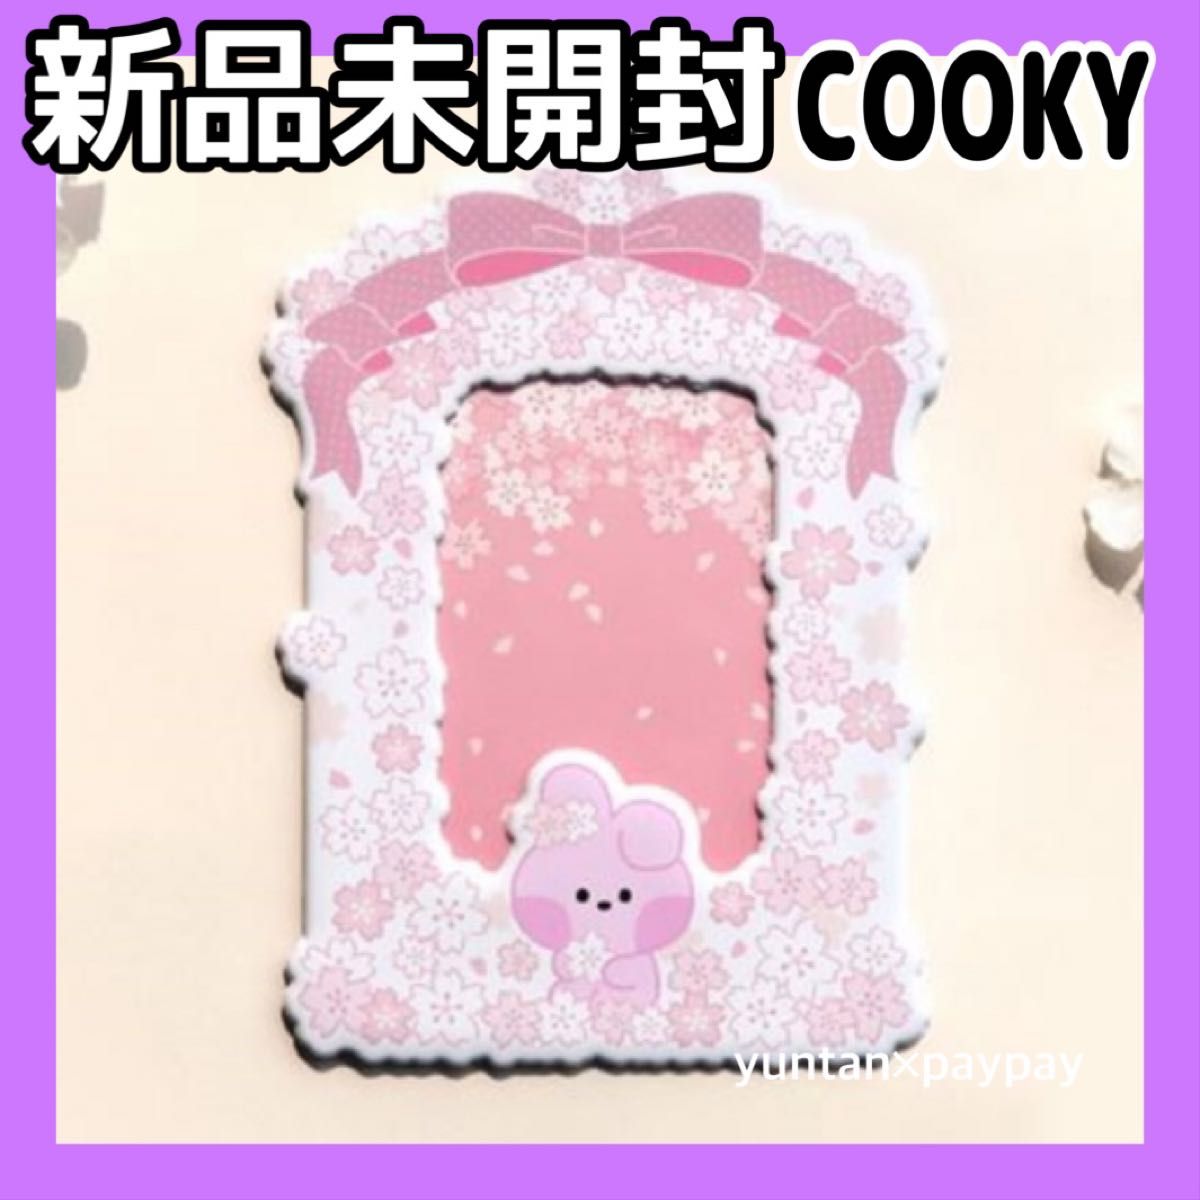 公式 BT21 フォトホルダー minini 桜 COOKY クッキー BTS グク ジョングク トレカケース カードケース 新品